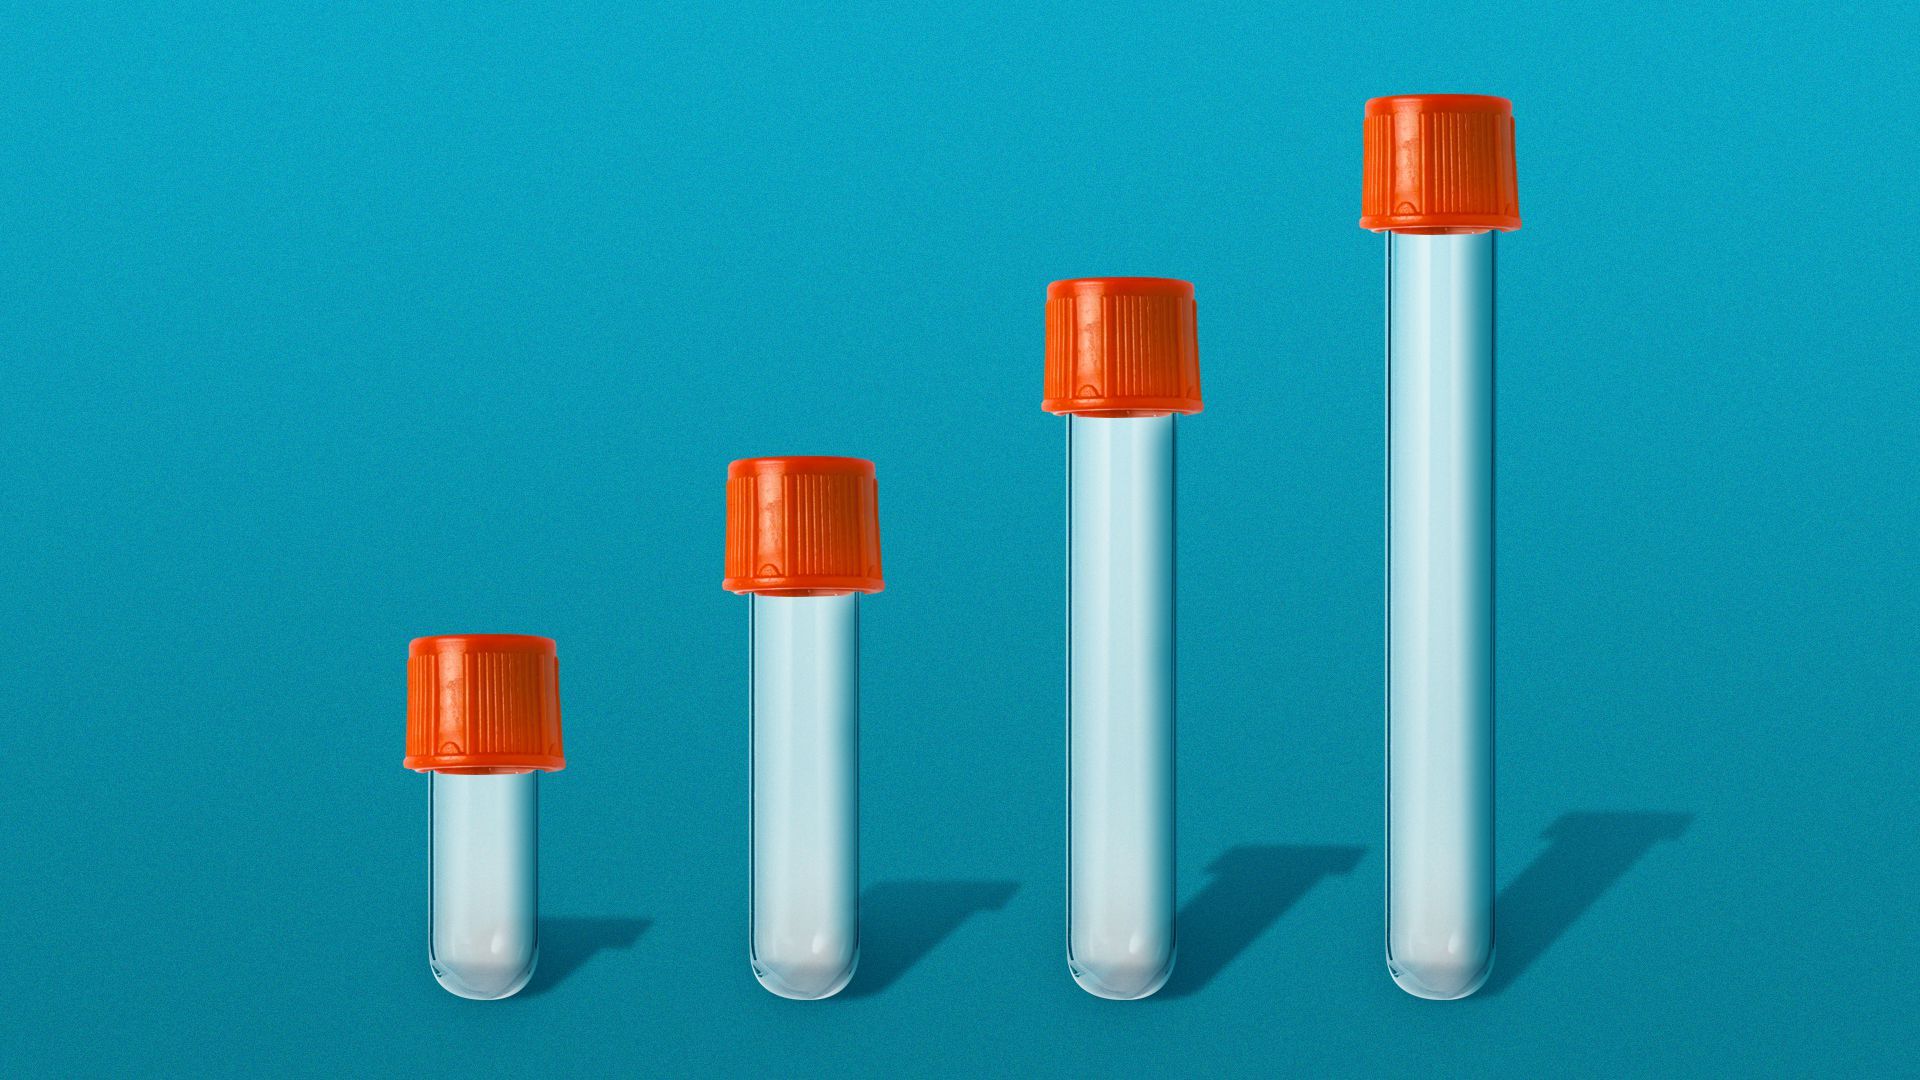 Illustration of vials getting progressively taller